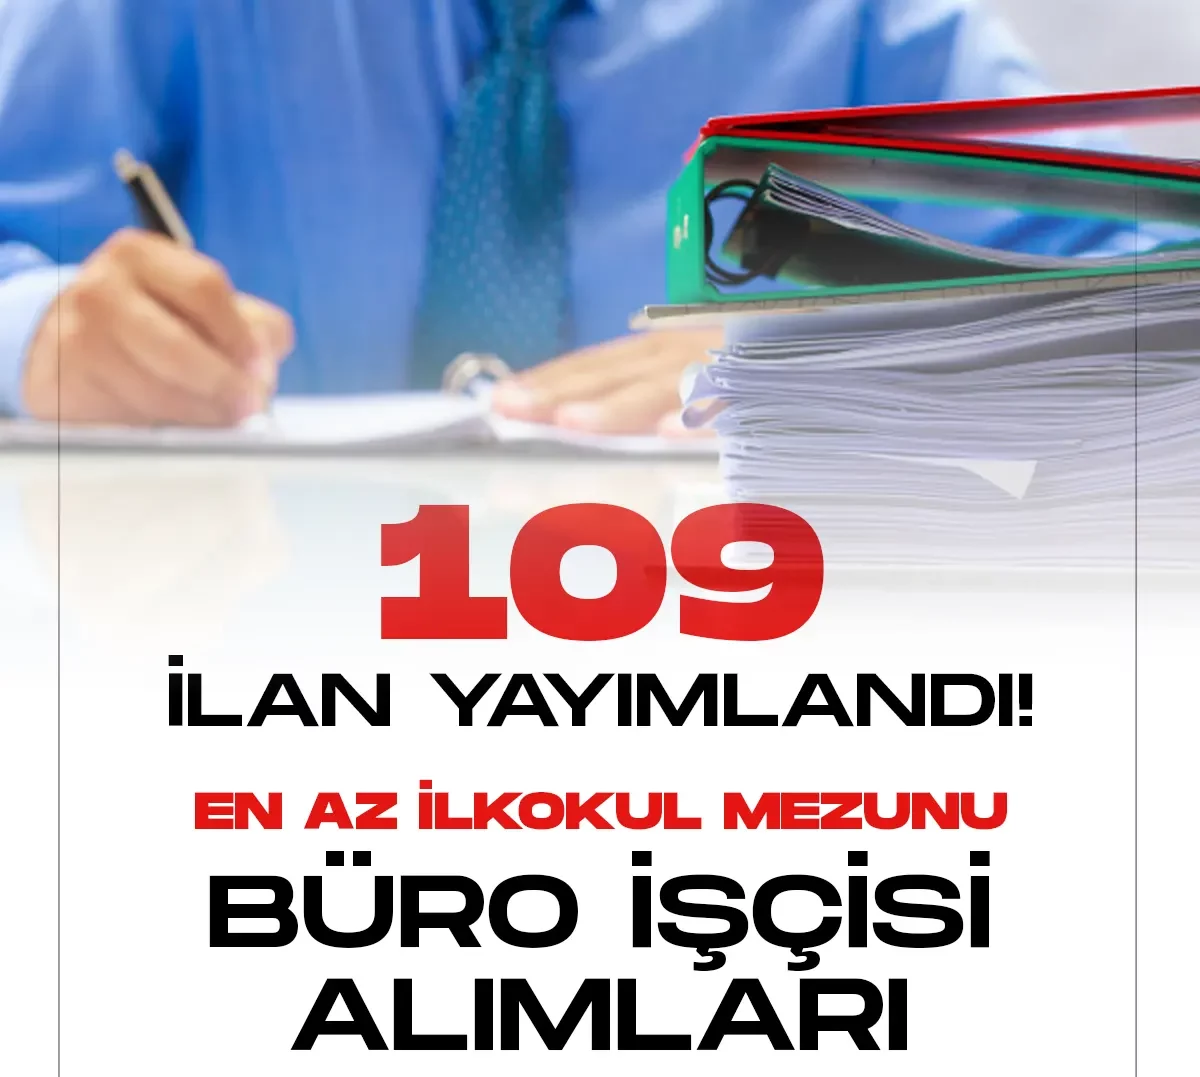 İŞKUR üzerinden büro işçisi alımı için 109 ilan yayımlandı.